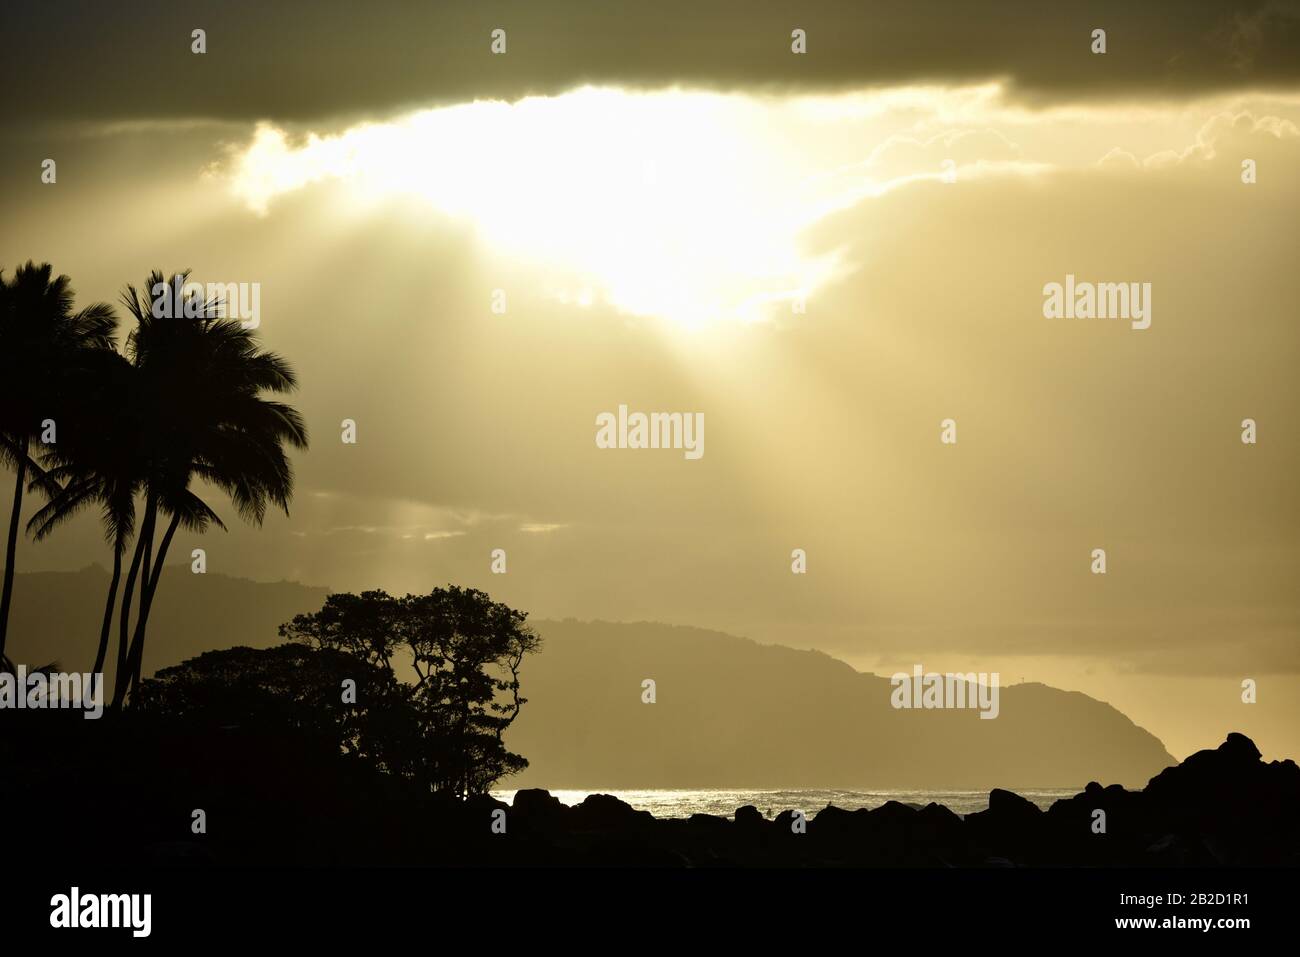 Tramonto spettacolare, con nuvole che piercing raggi del sole, palme silhouette sulla costa costiera sulla costa settentrionale di Oahu, Haleiwa, Hawaii, USA Foto Stock